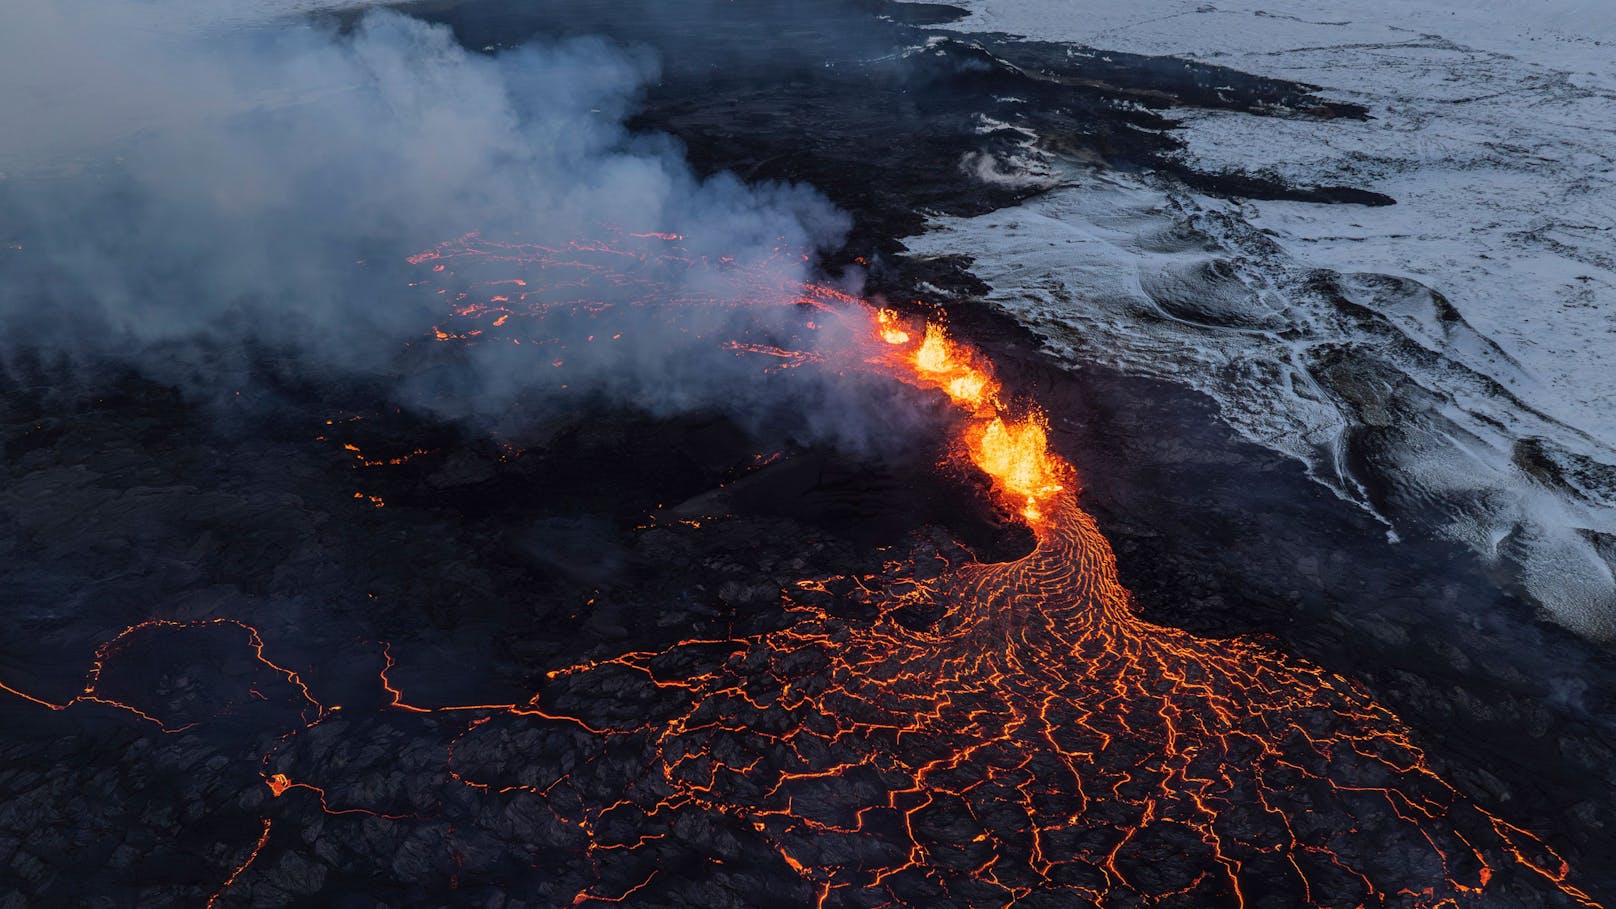 Island zittert vor neuerlichem Vulkanausbruch